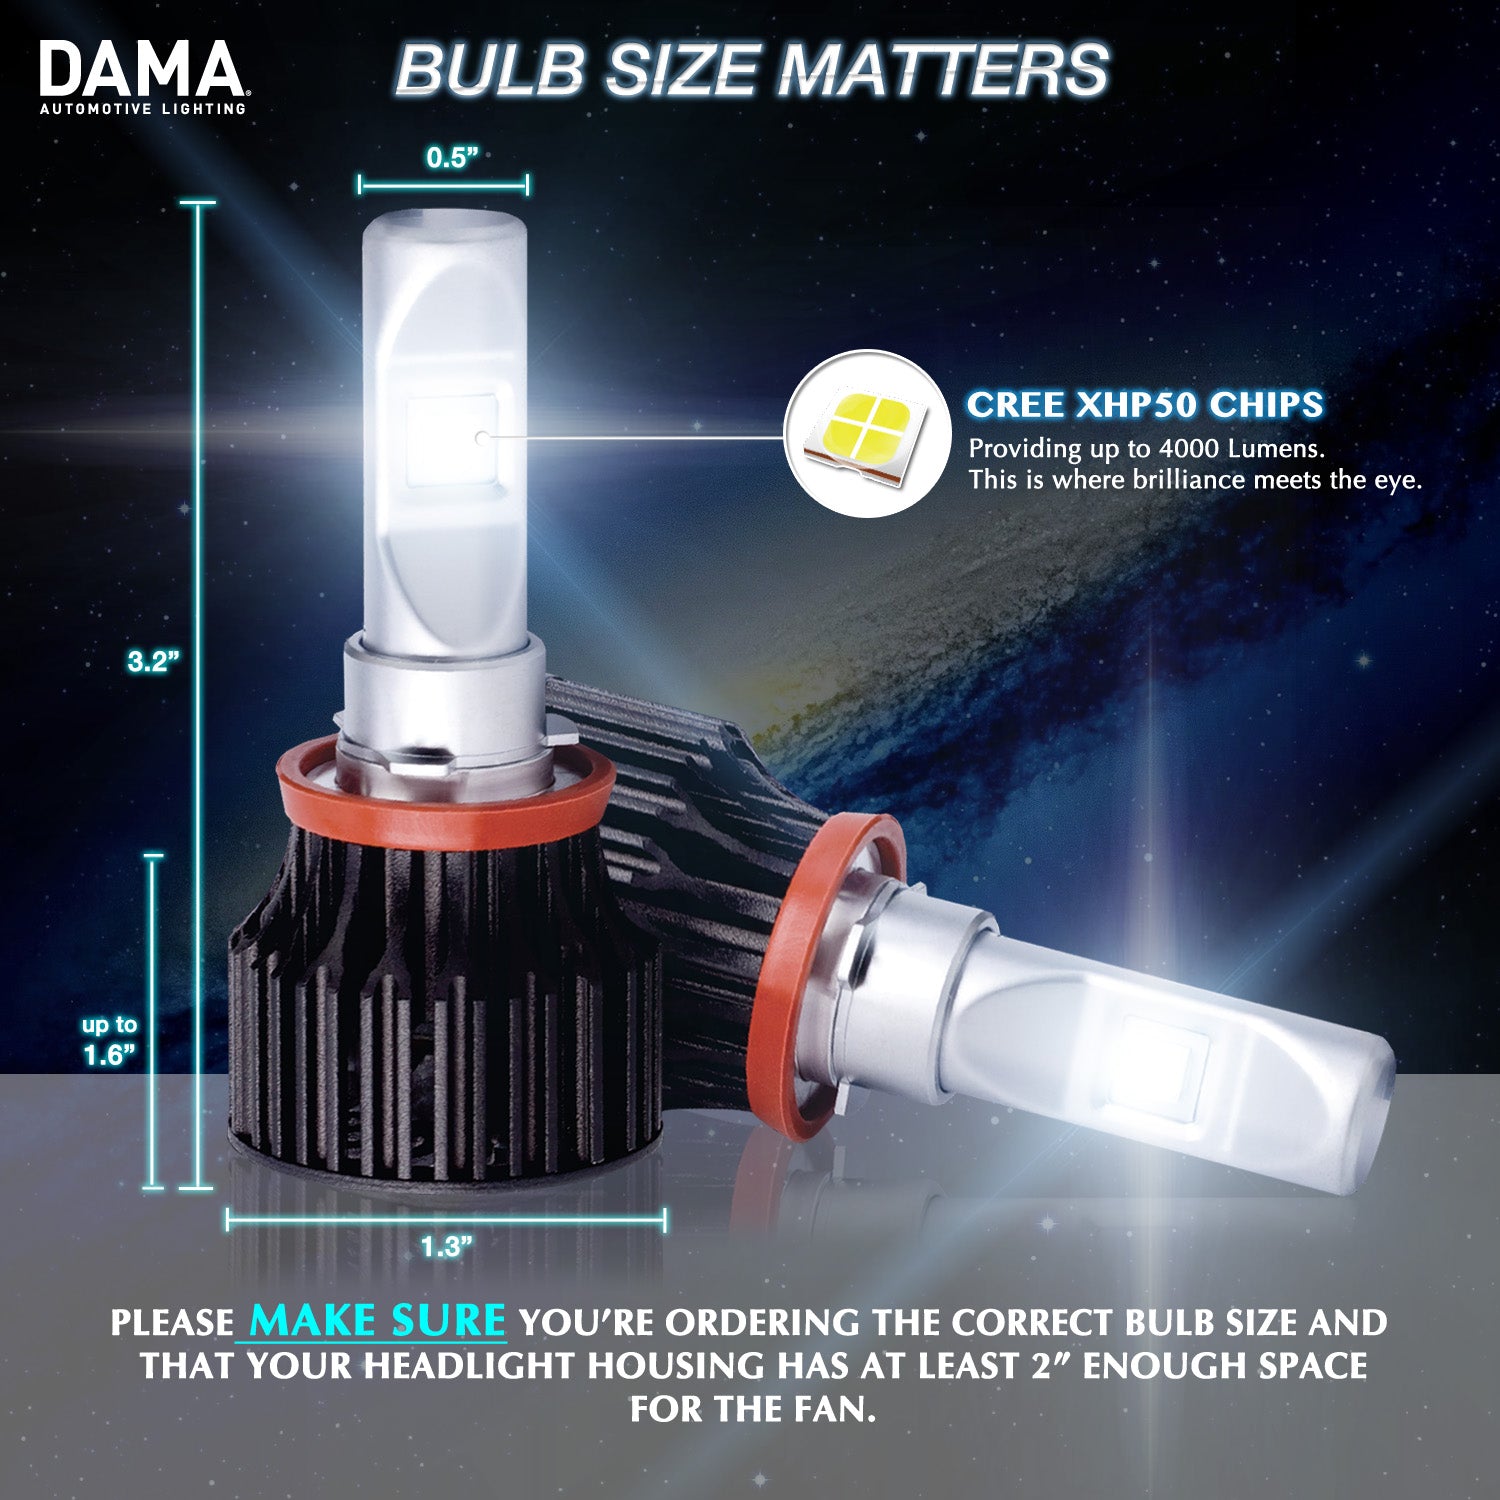 Measurements of DAMA bulb